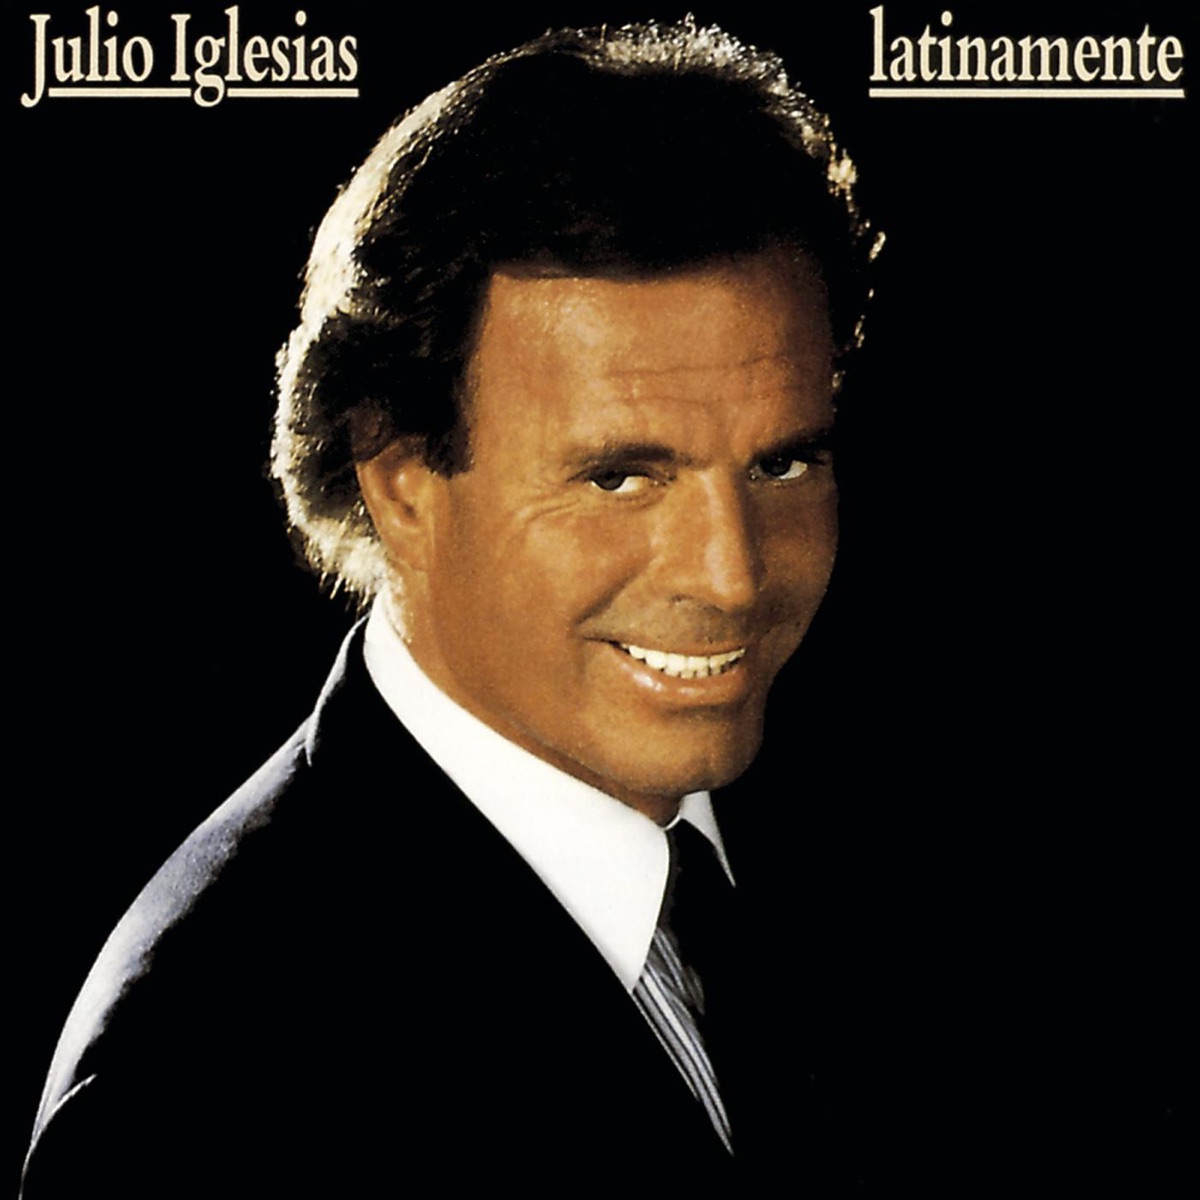 L'homme que je suis - Album by Julio Iglesias - Apple Music